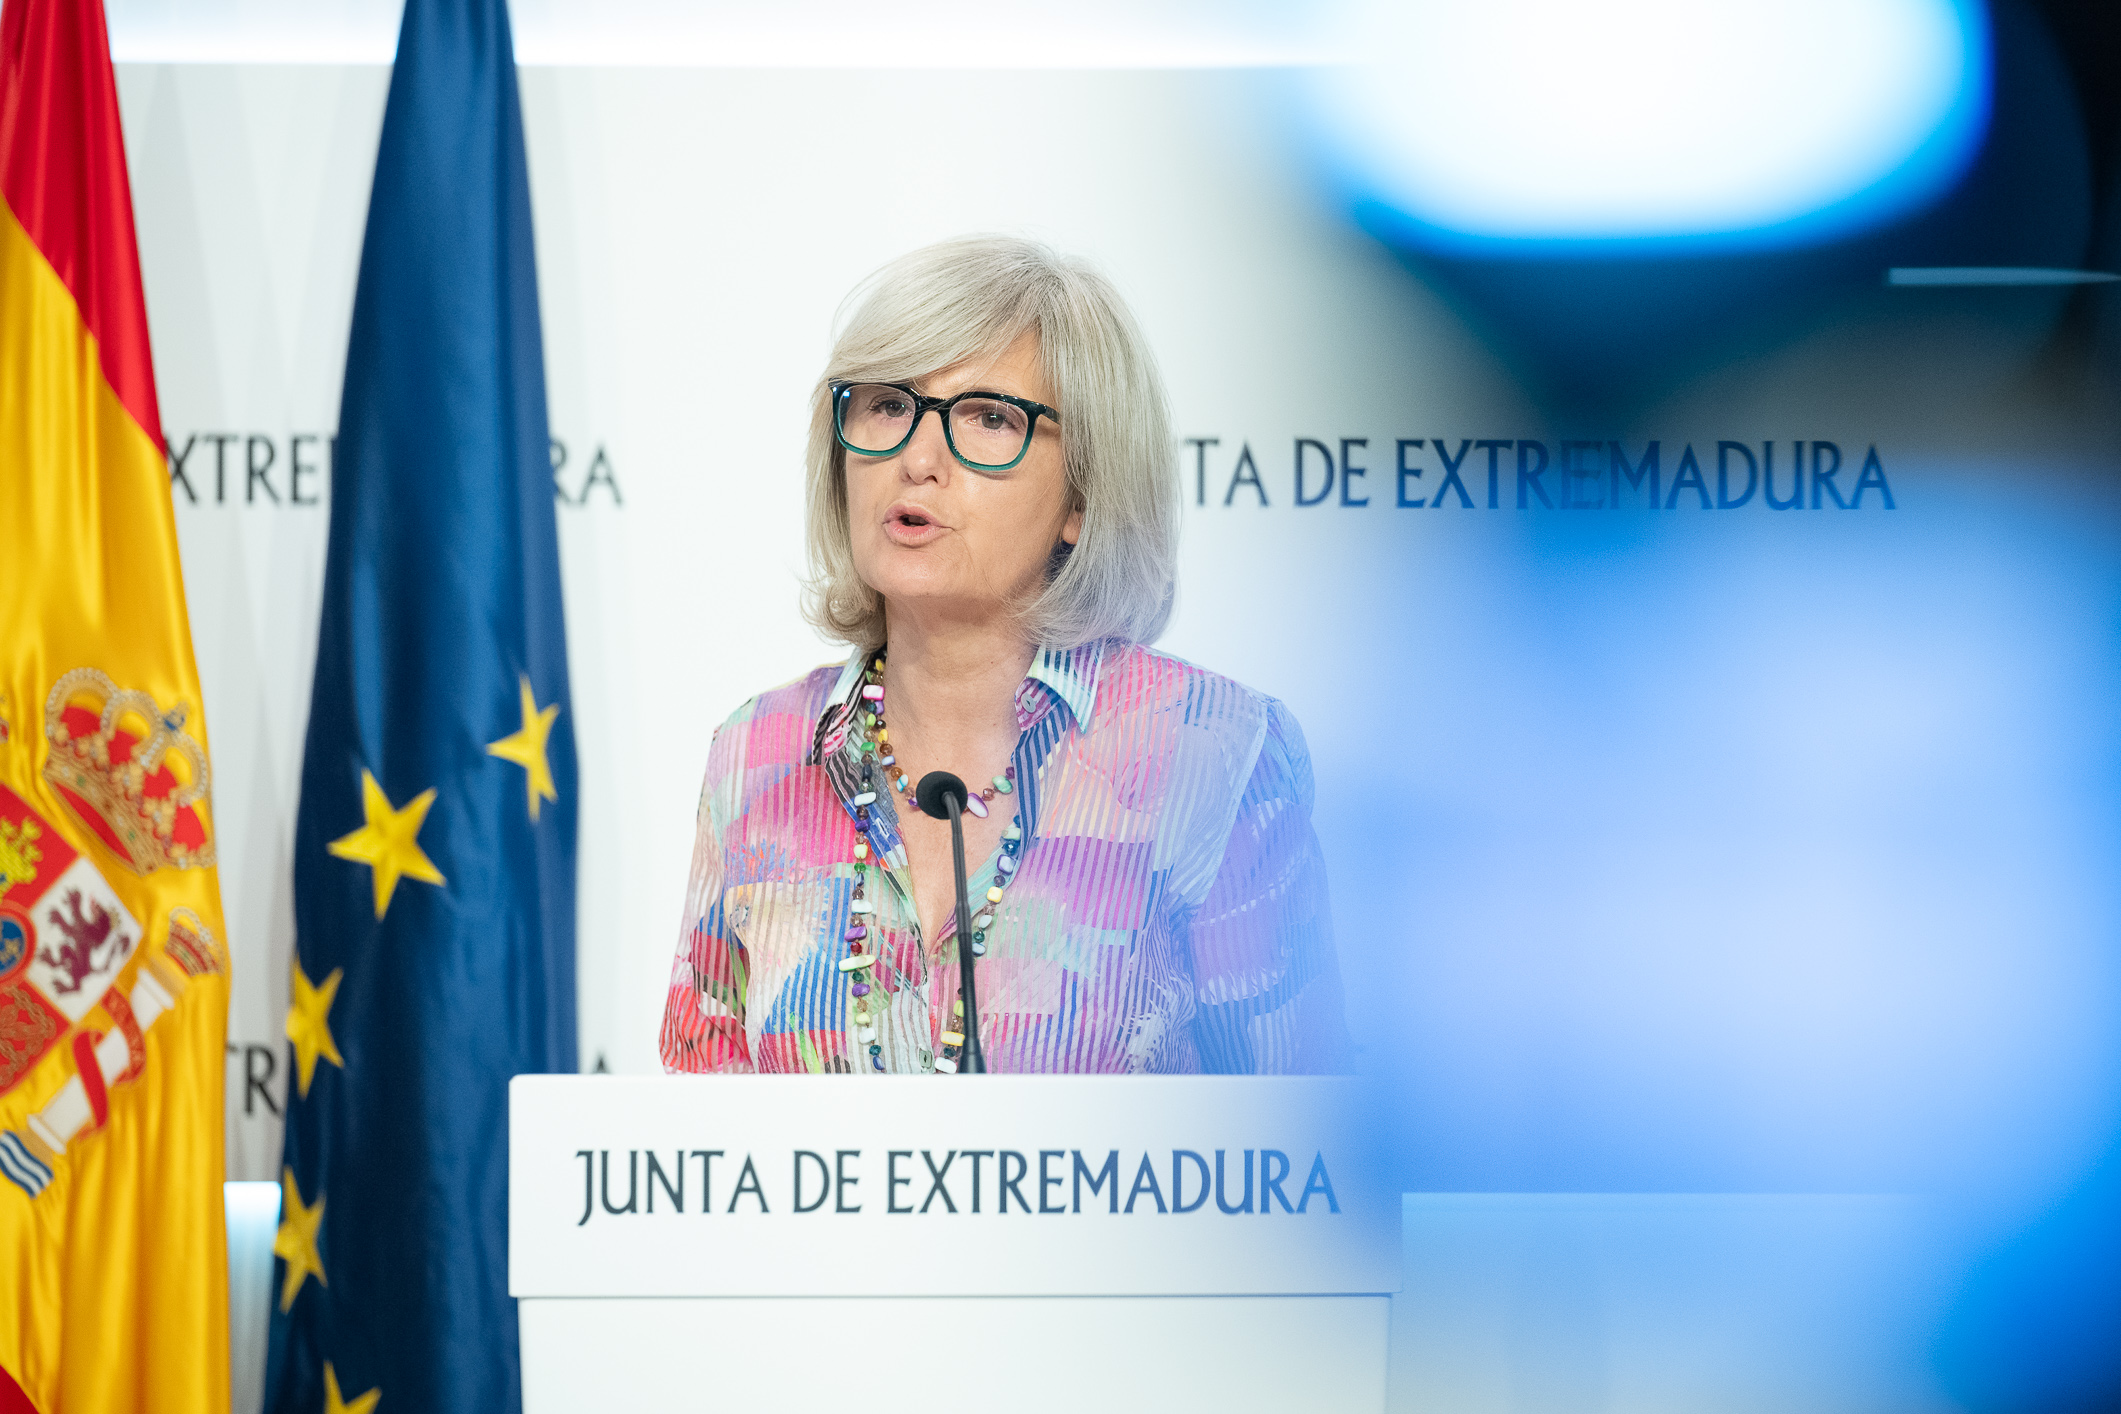 Image 1 of article La Junta de Extremadura aprueba ayudas de hasta 10.800 euros para los jóvenes que compren su vivienda en pequeños municipios